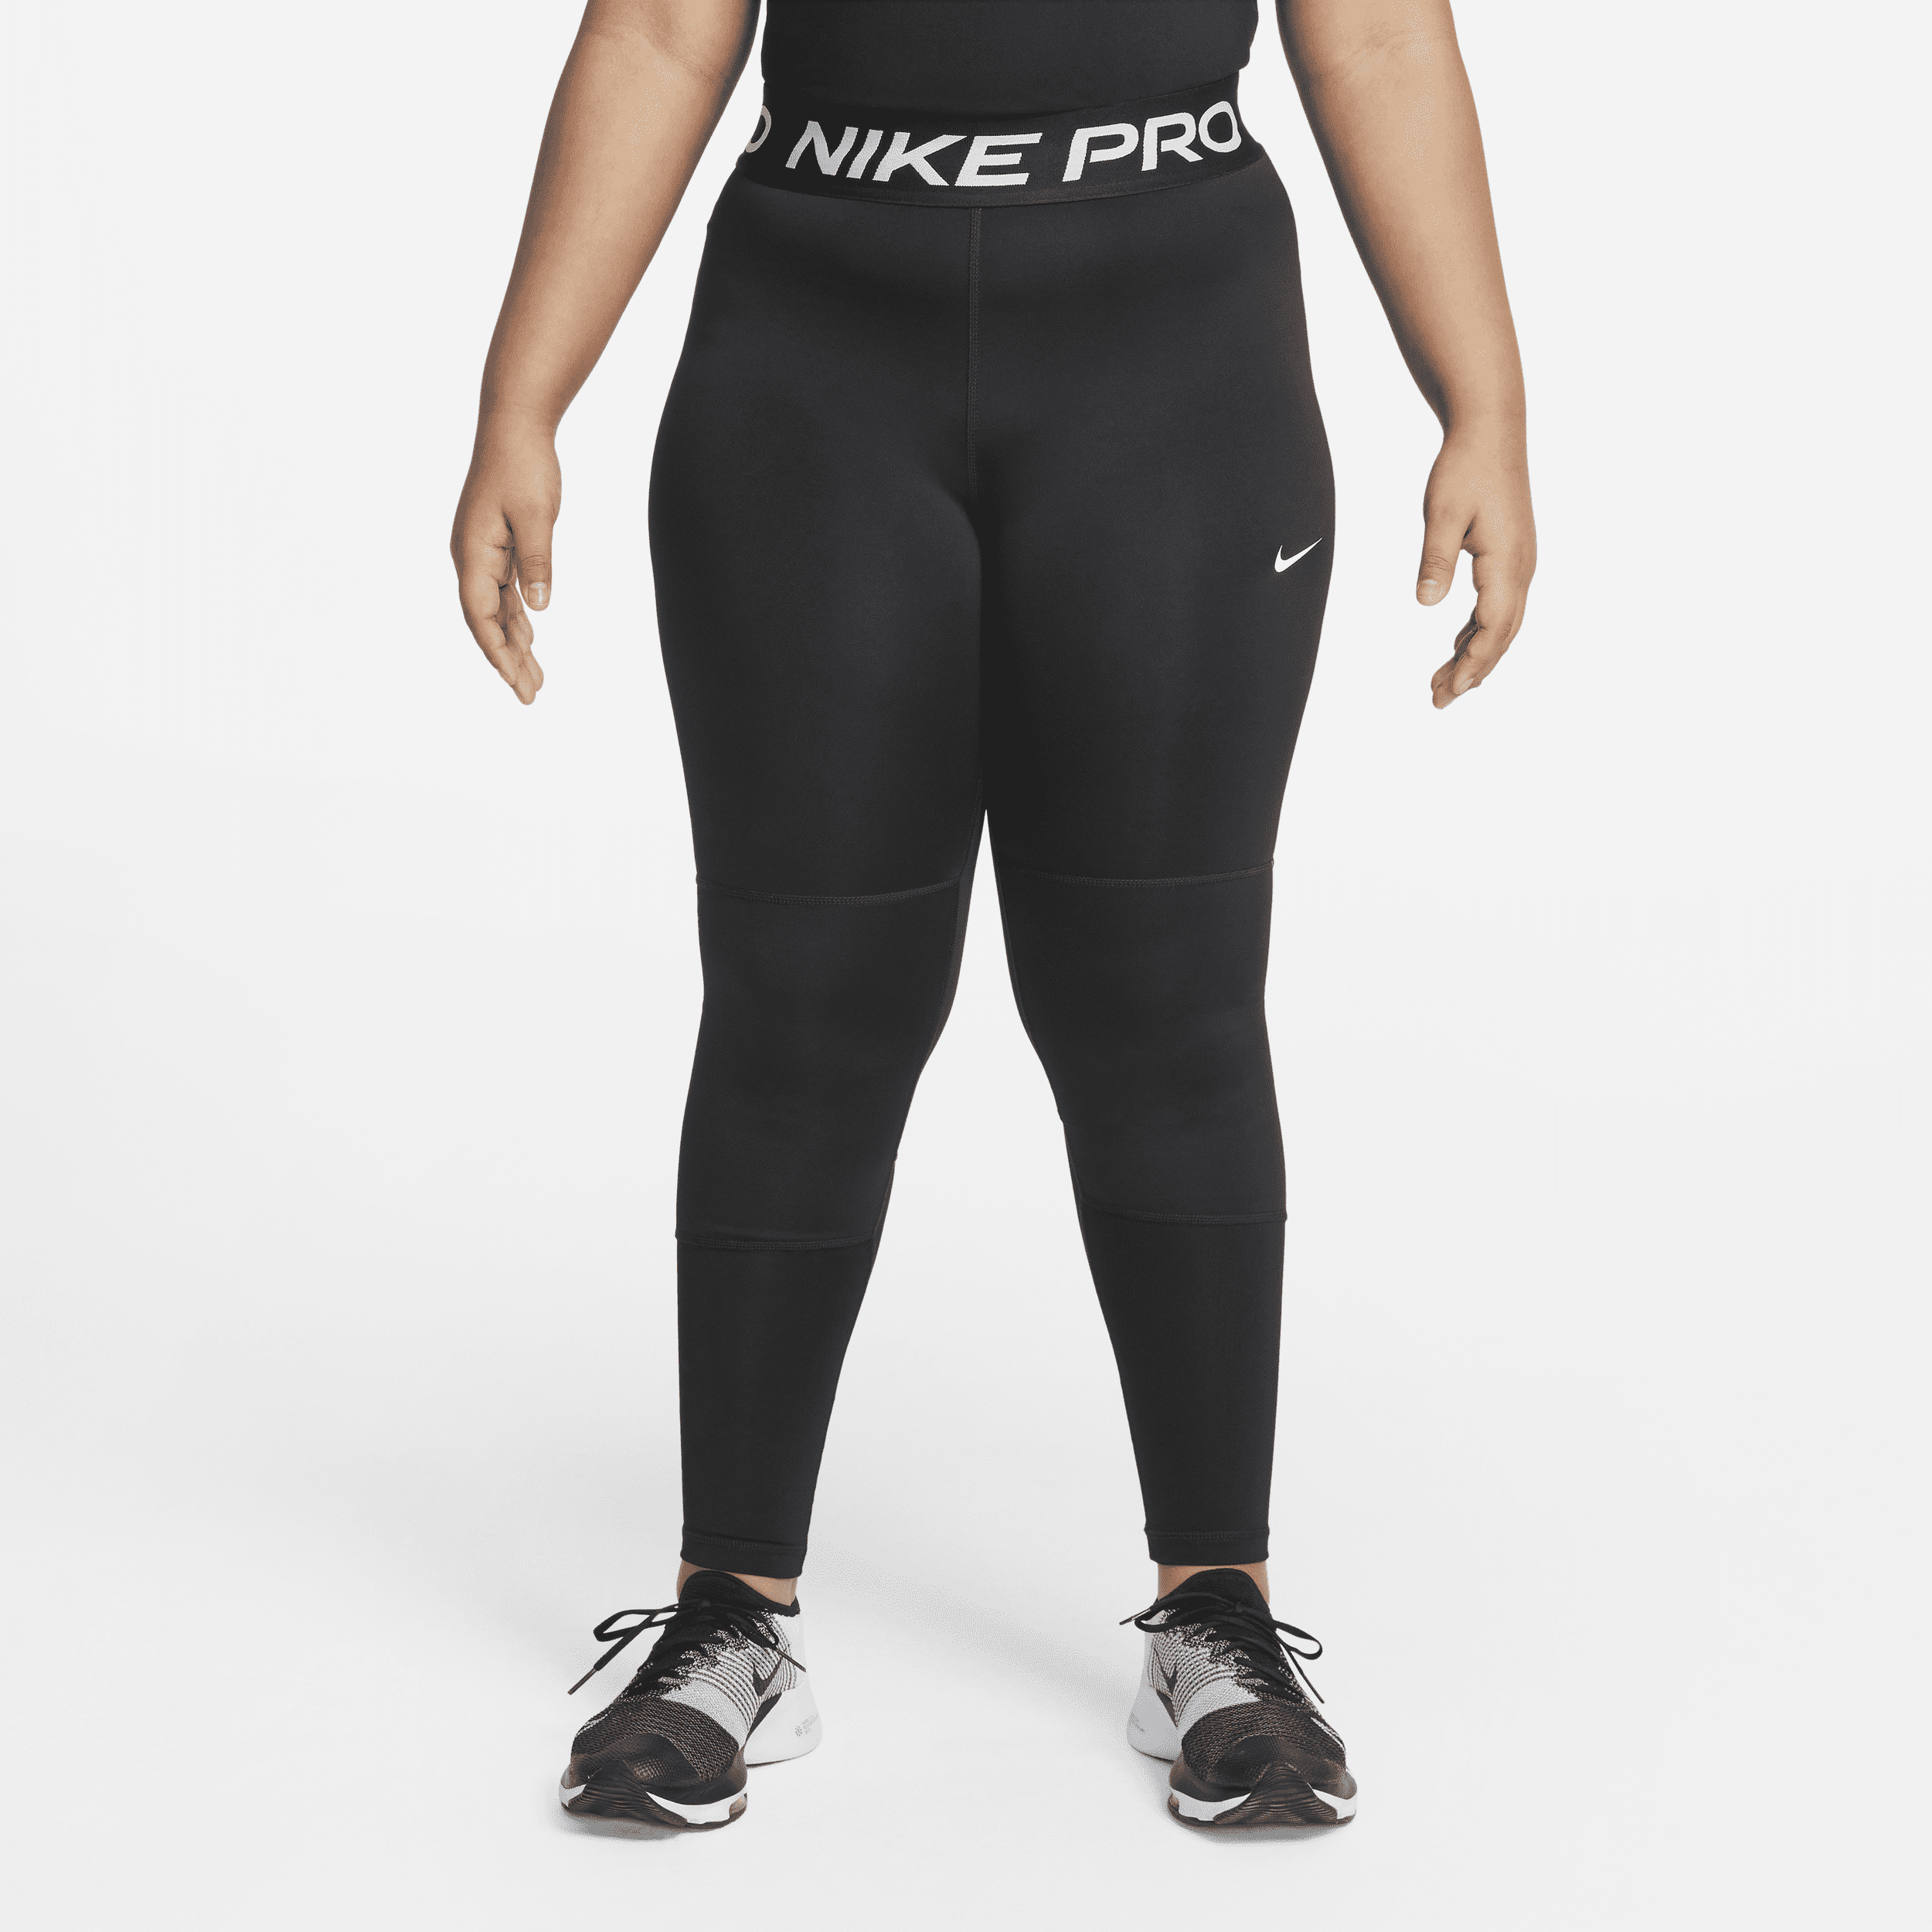 Leggings Nike Pro Dri-FIT (Taglia grande) – Ragazza - Nero